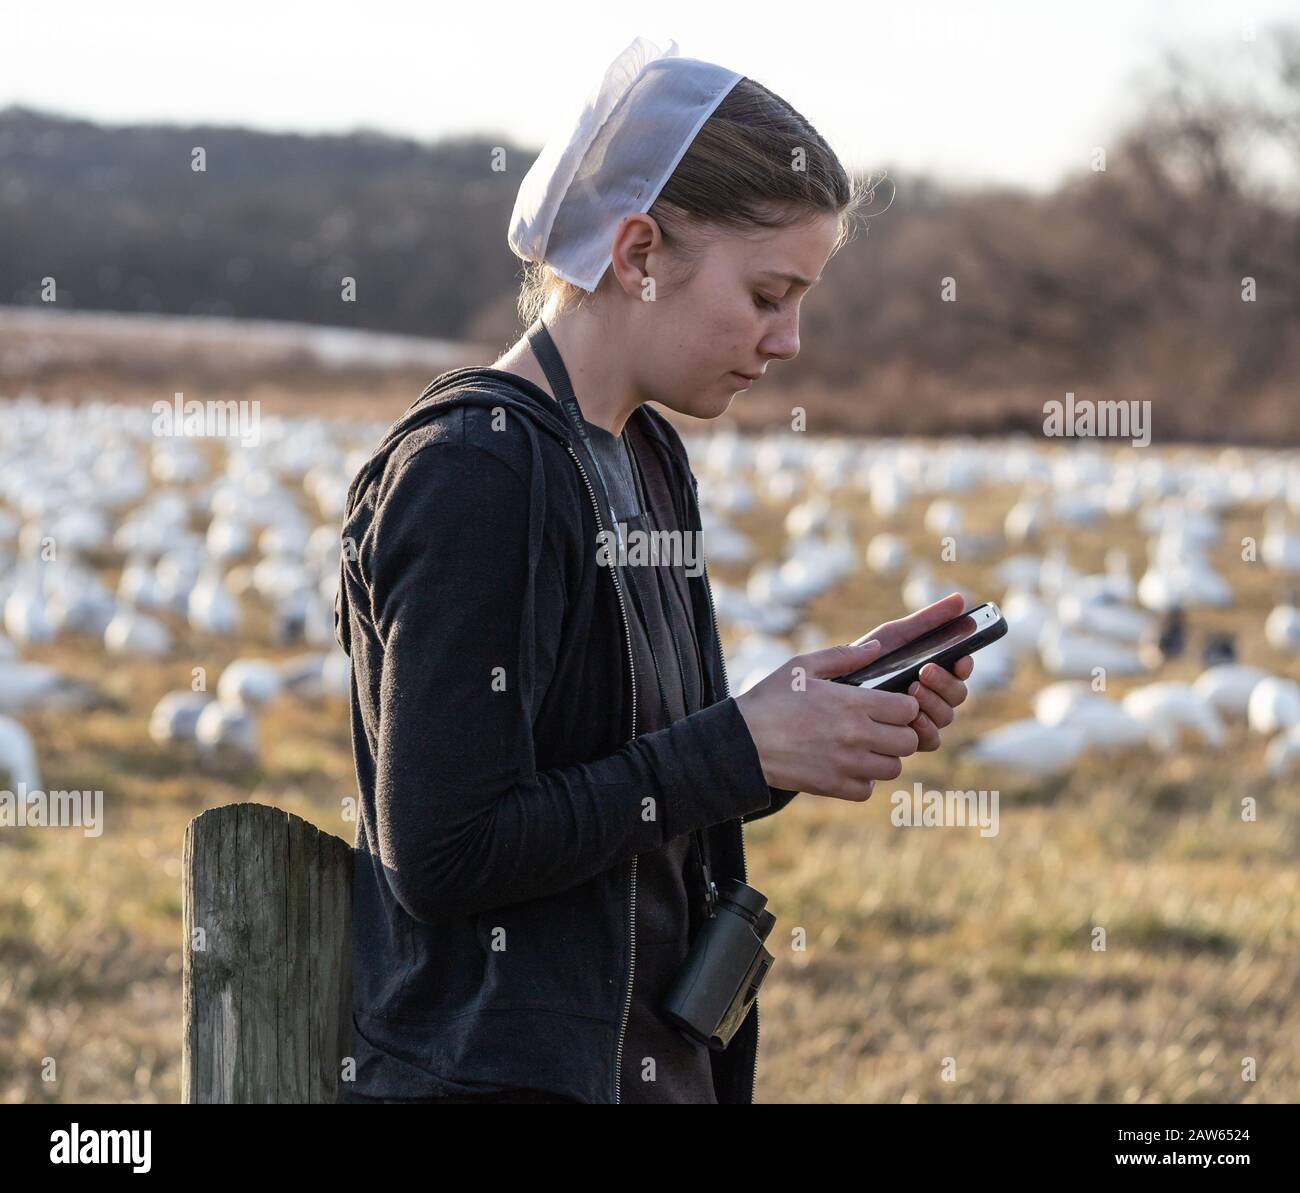 Condado de Lancaster, Pensilvania, EE.UU.: 3 de febrero de 2020: Mujeres jóvenes Amish con vestido negro y pelo blanco que cubren utilizando el teléfono celular Foto de stock